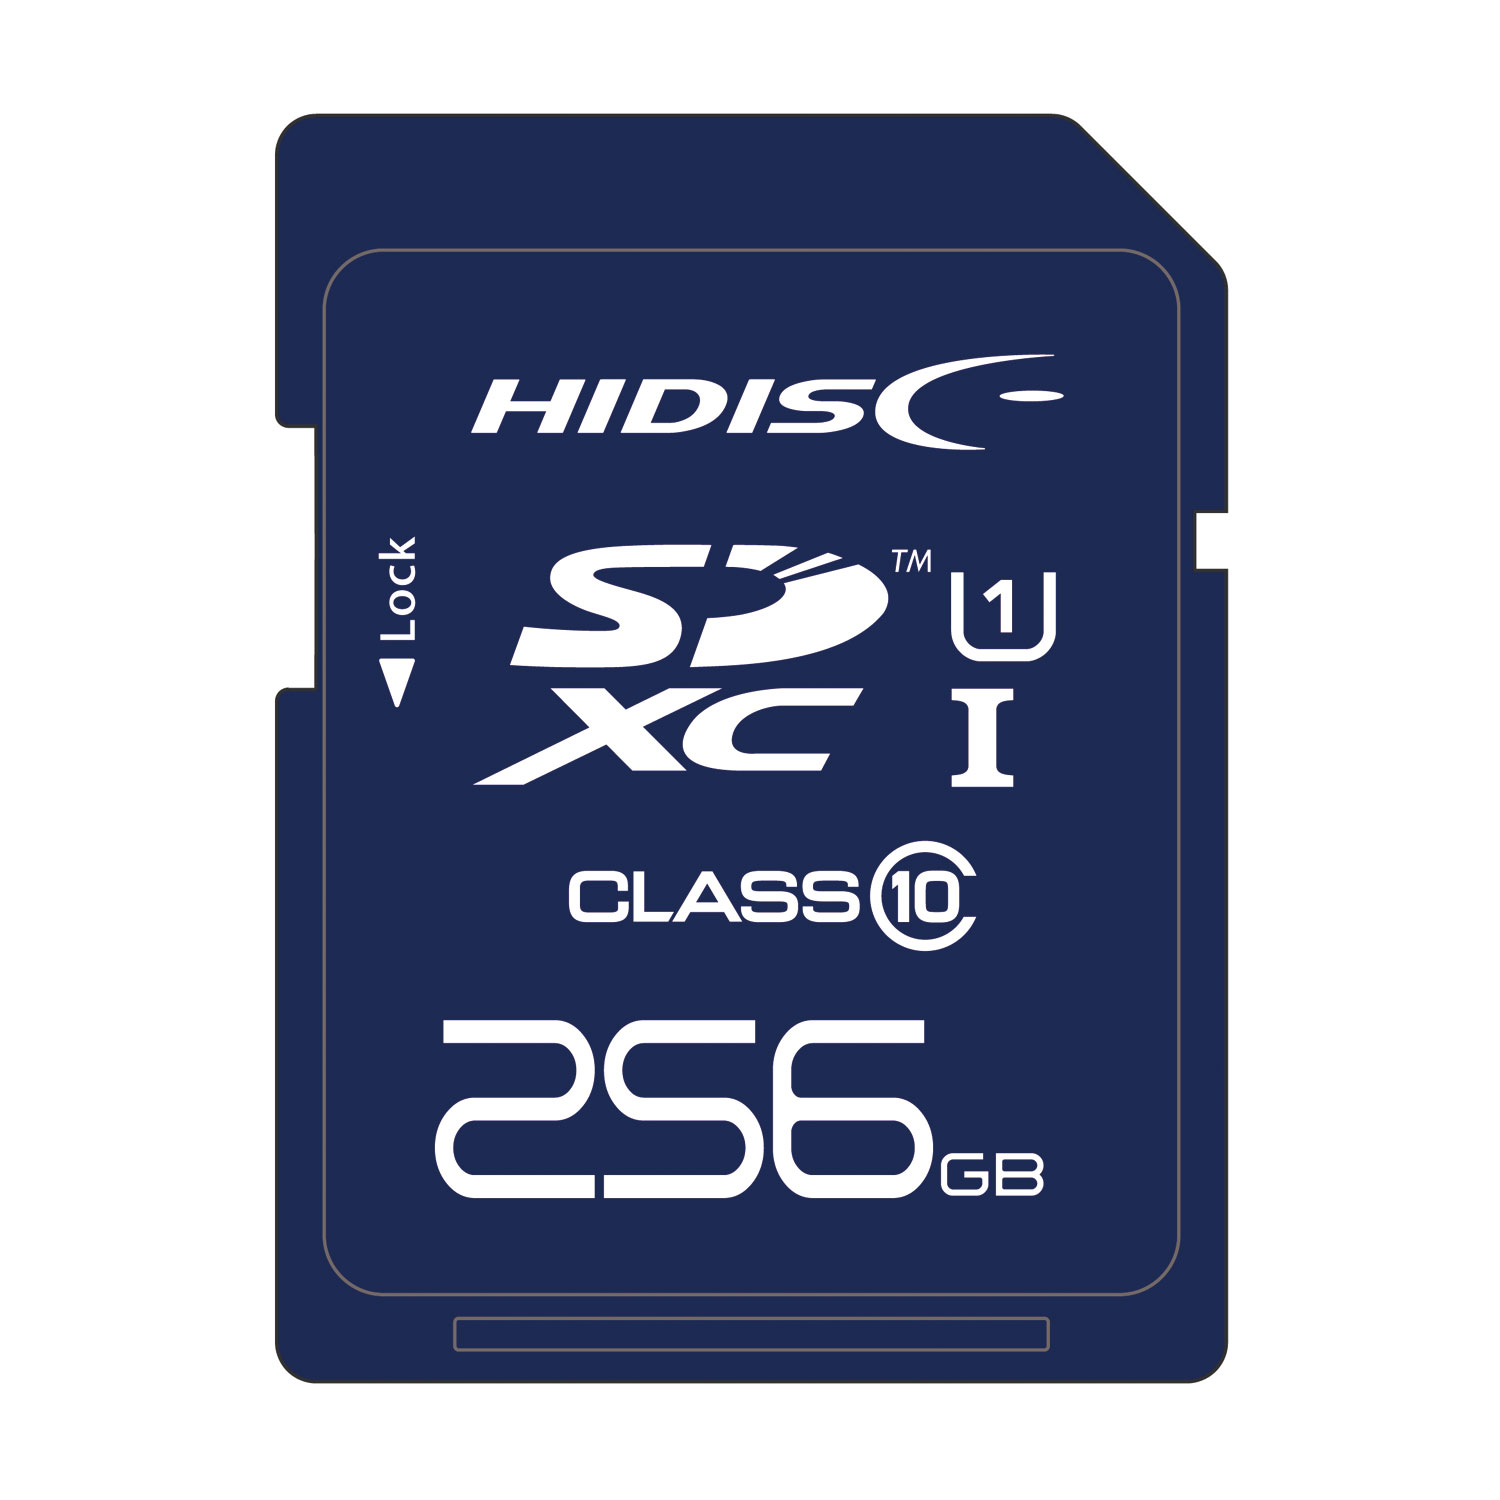 HIDISC 超高速SDXCカード 256GB CLASS10 UHS-I 対応